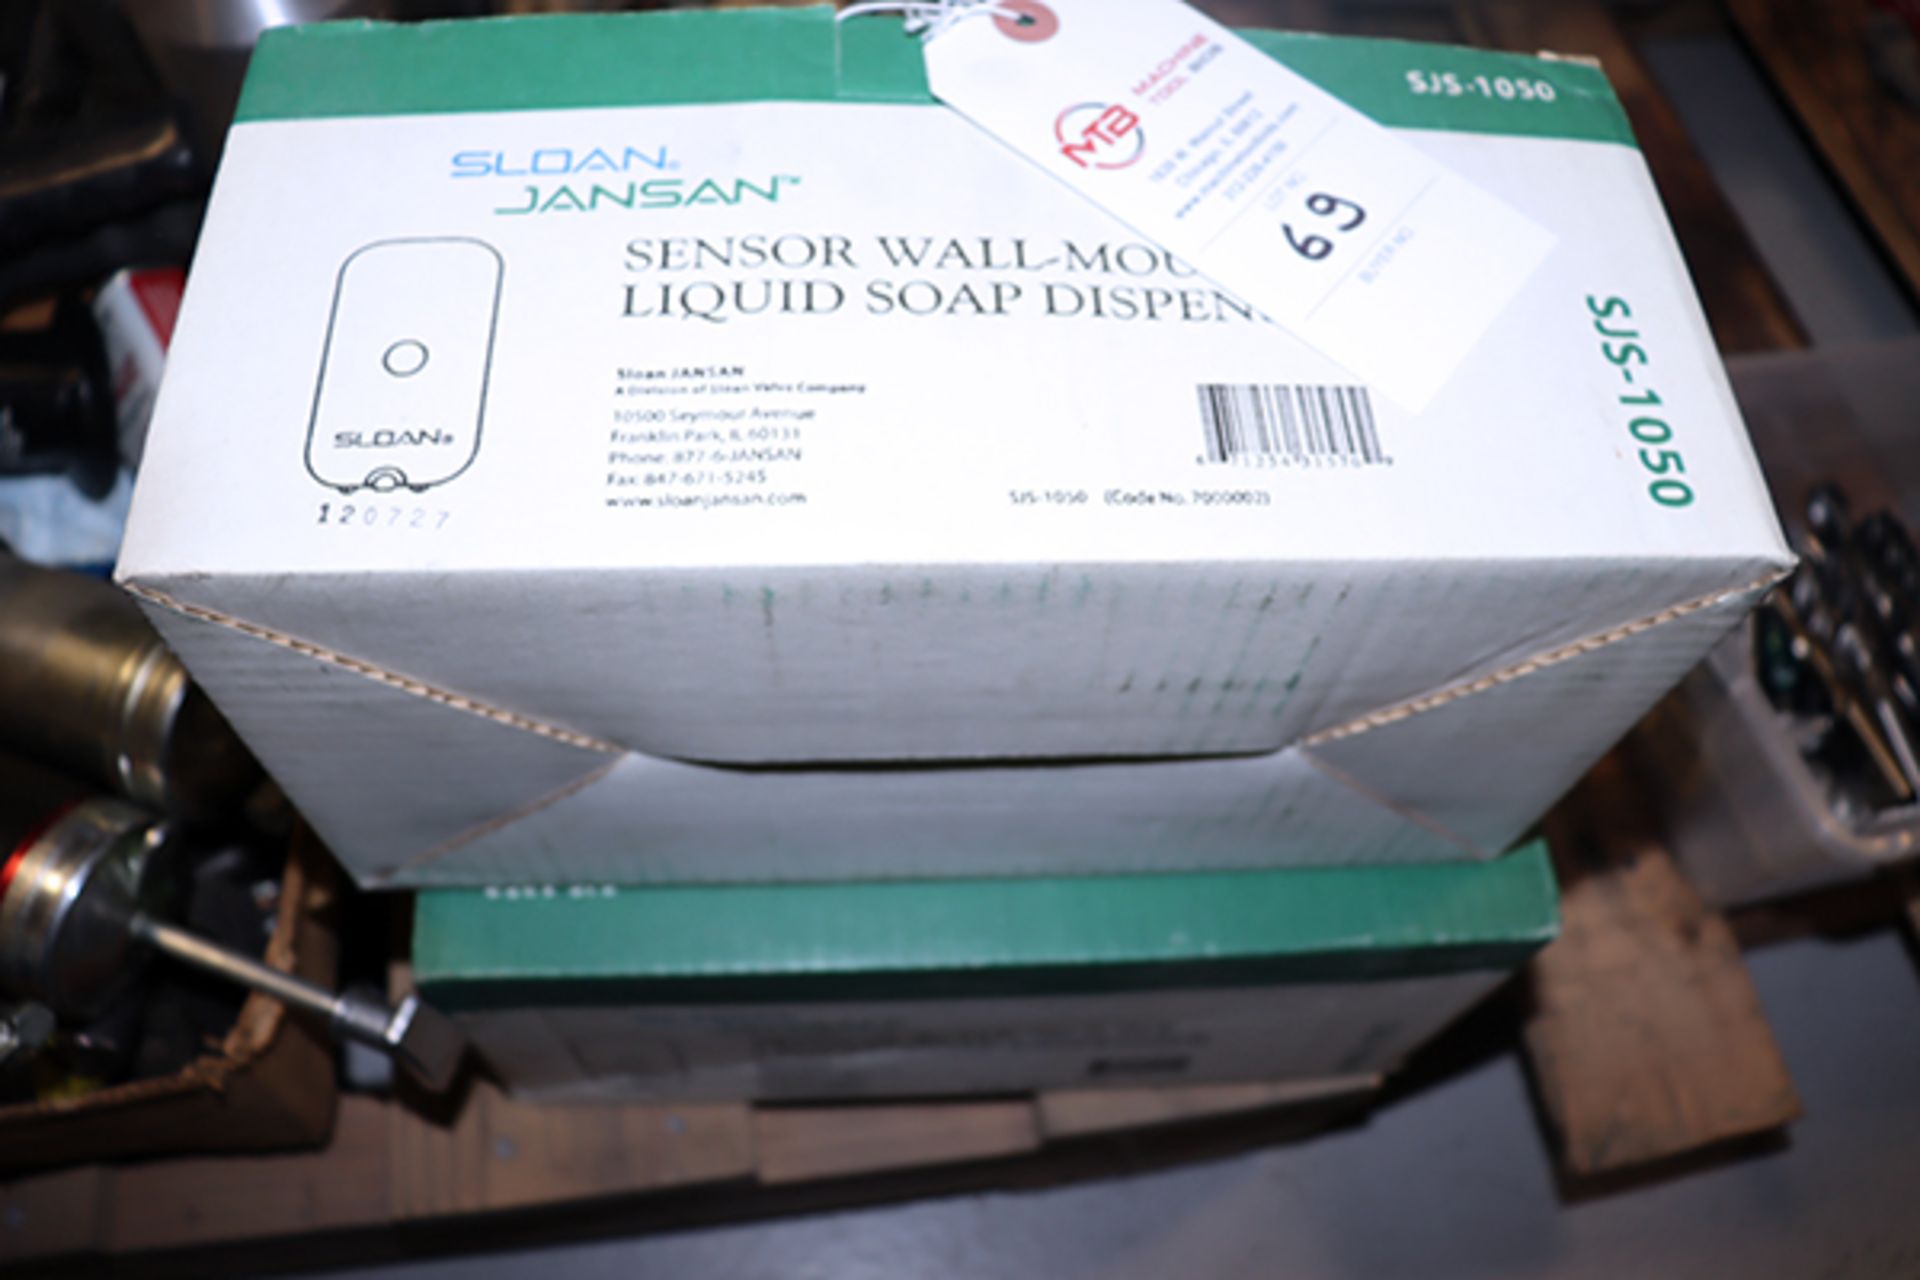 2 Sensor Wall-Mount Liquid Soap Dispenser - Image 2 of 2